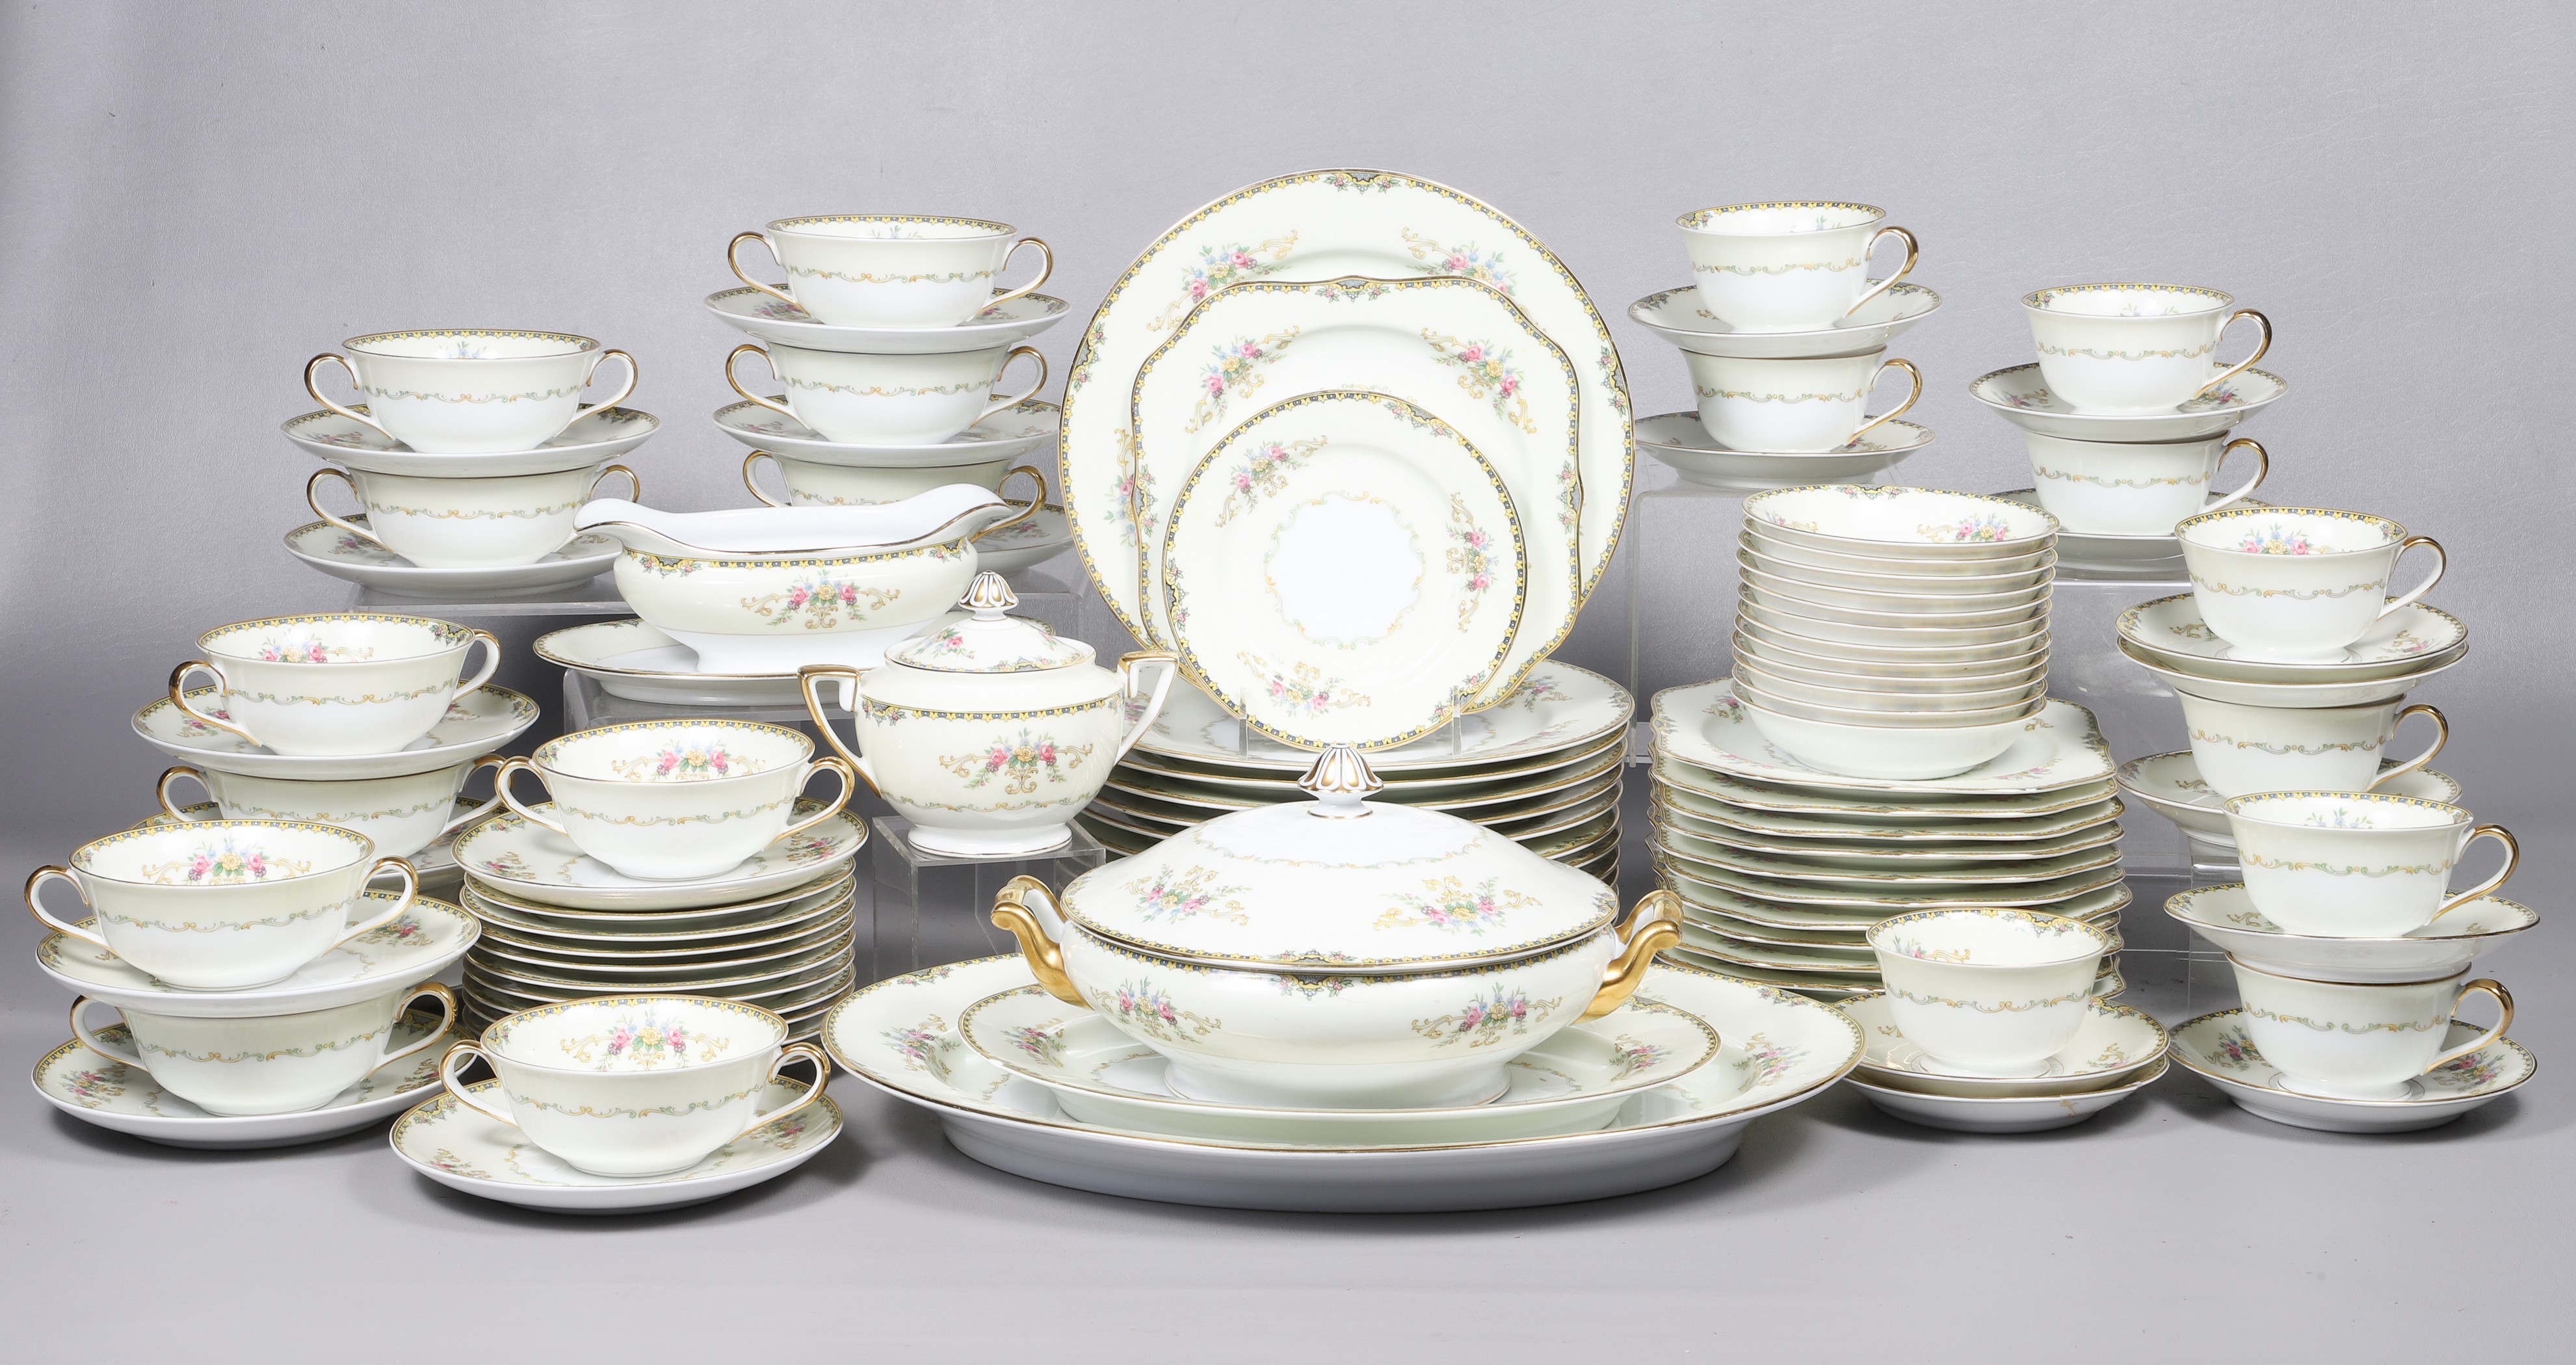  96 Pcs Noritake porcelain dinnerware  2e15e9